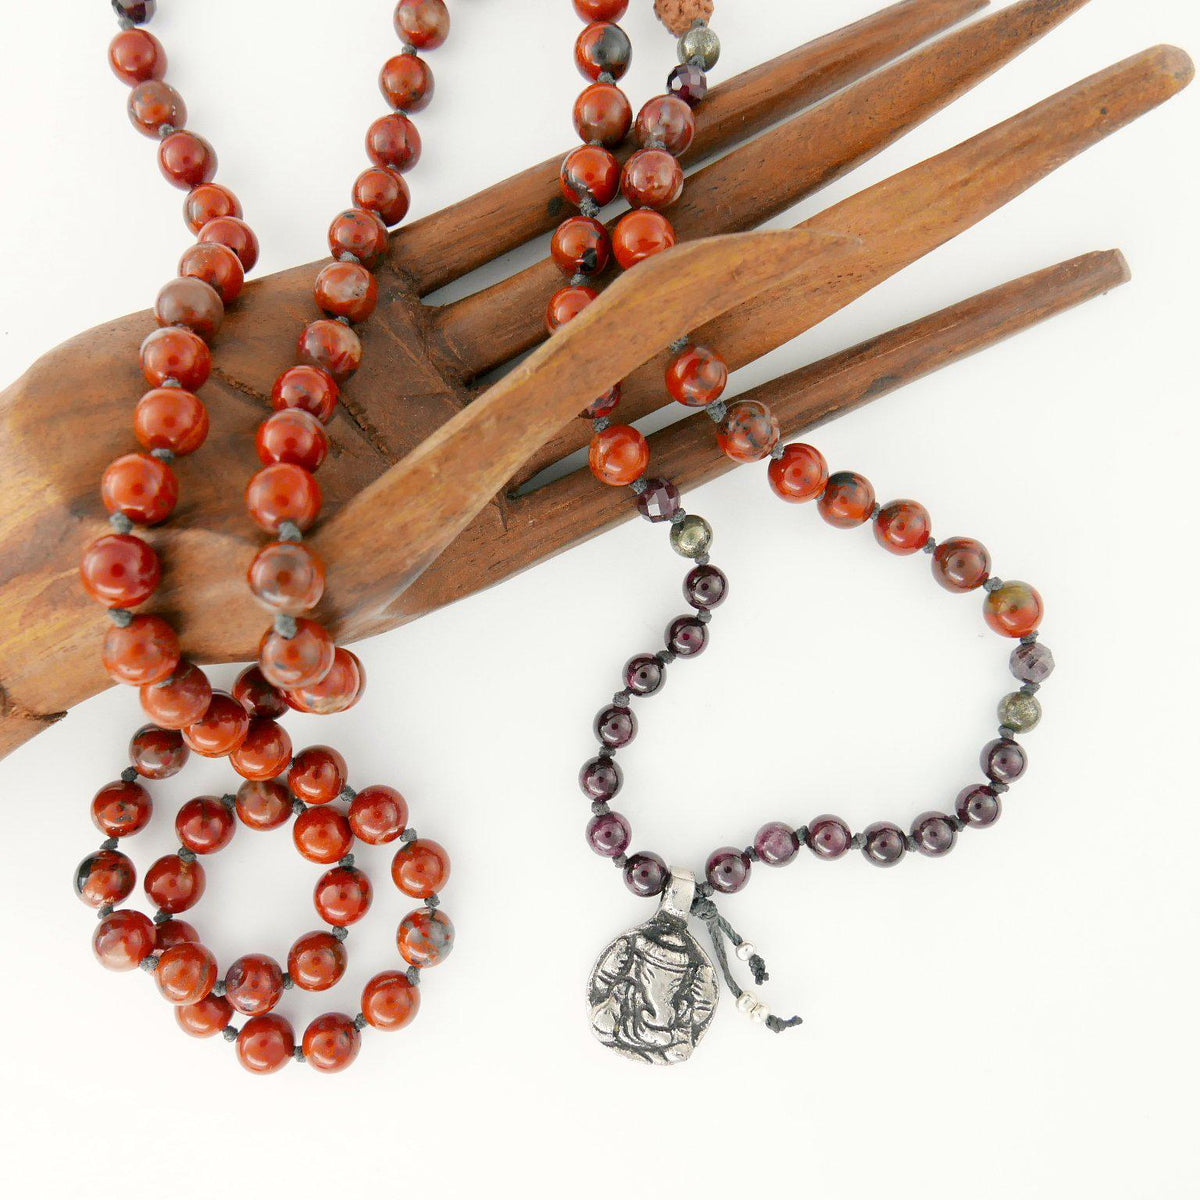 Strength and health Ganesh mala necklace kit - MeraKalpa Malas